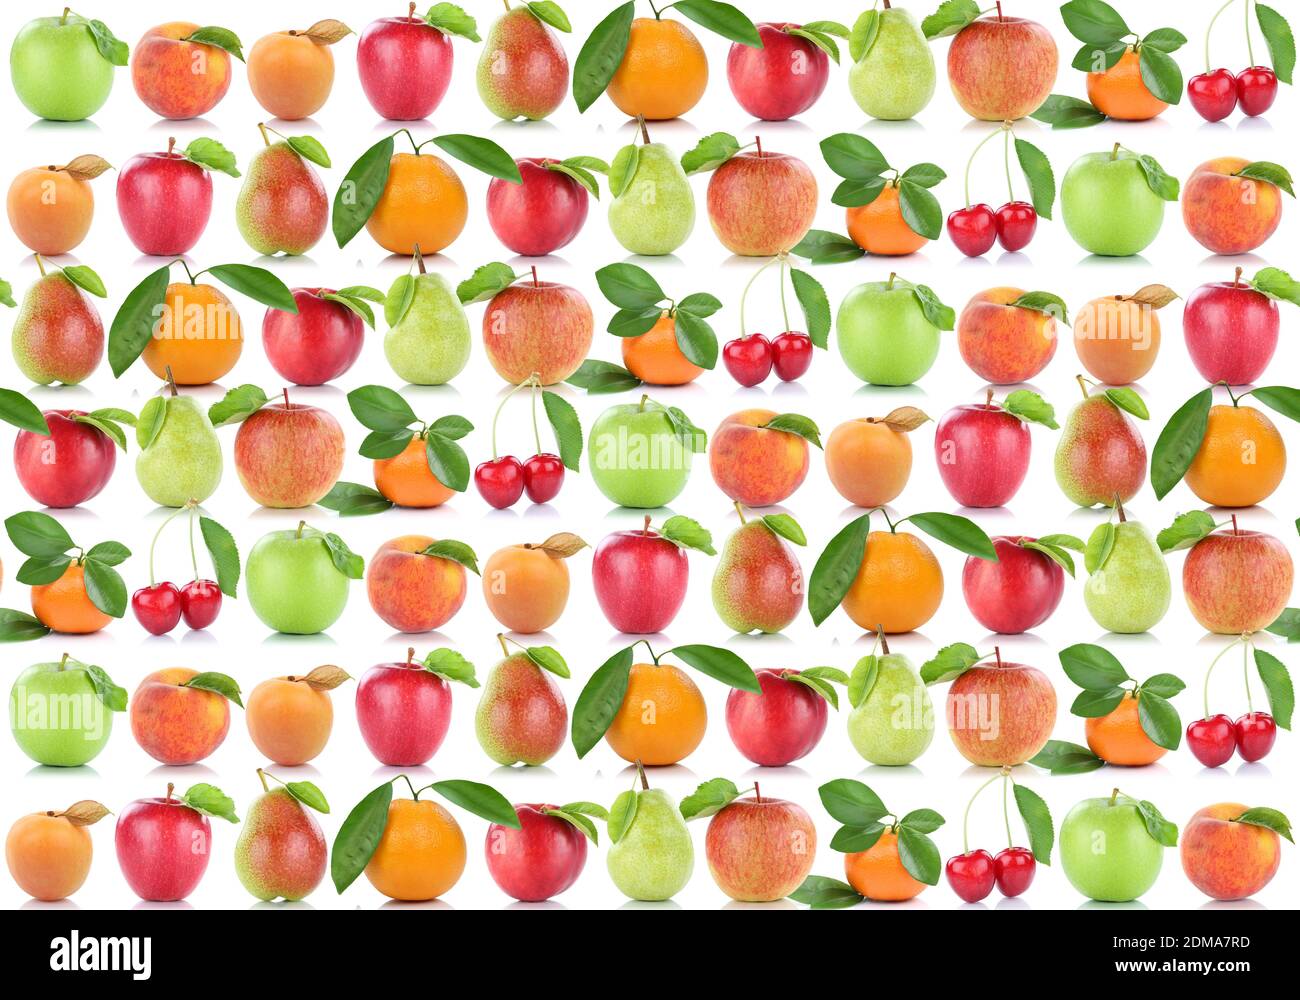 Früchte Hintergrund Apfel Orange Frucht Äpfel Aprikose Orangen Kirschen Birne Obst Stock Photo